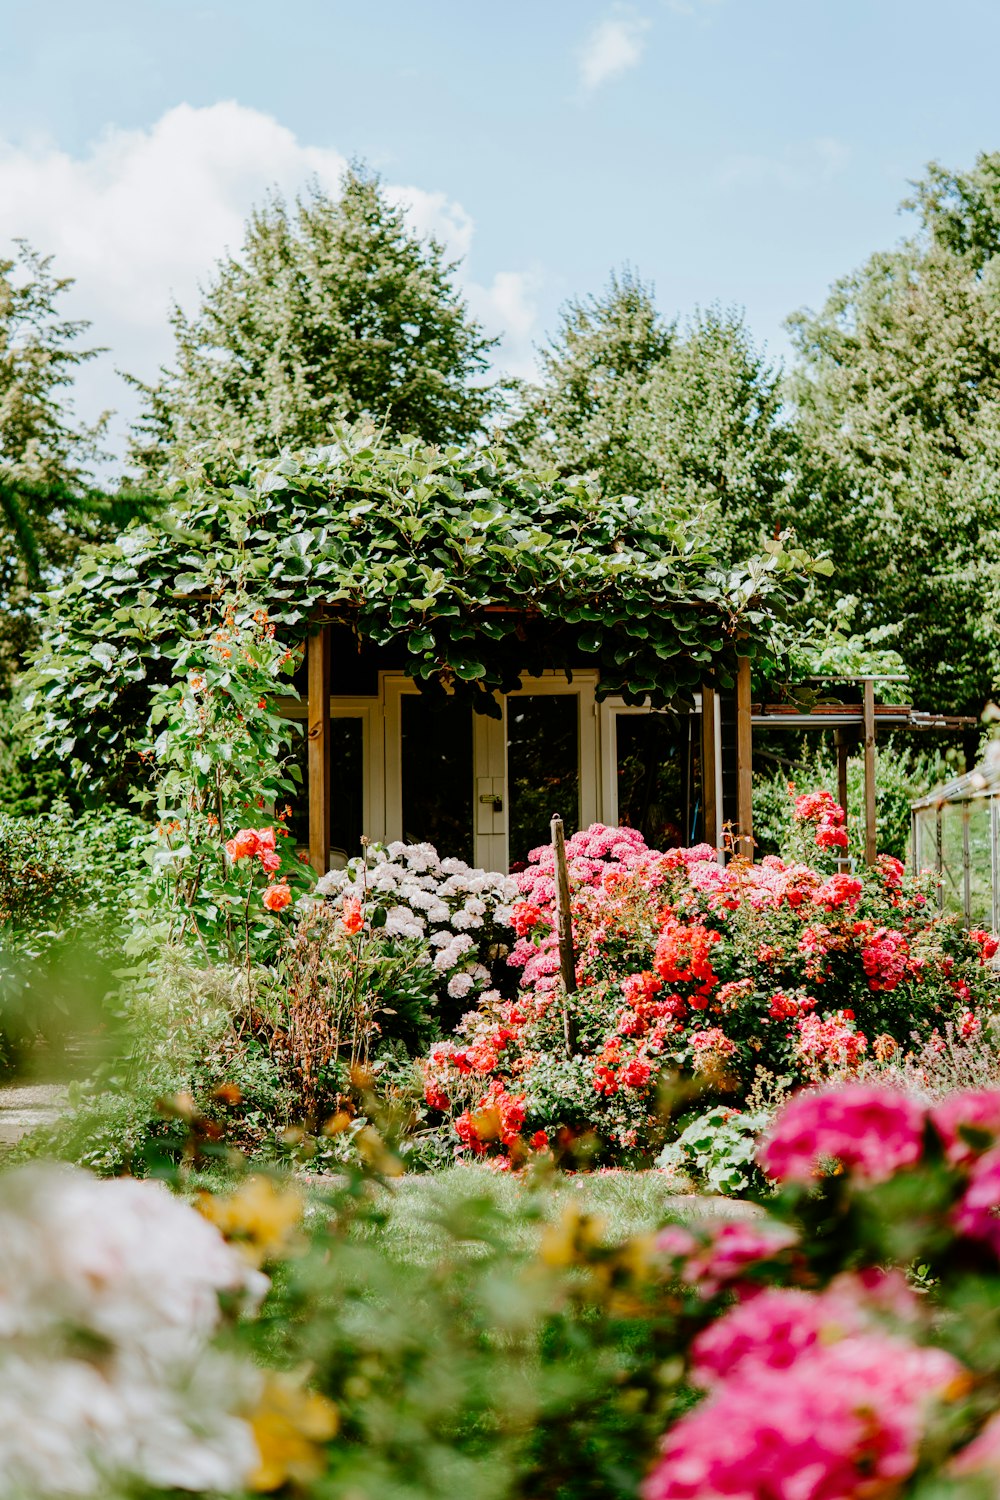 Edificio cubierto de plantas verdes y rodeado de flores de pétalos